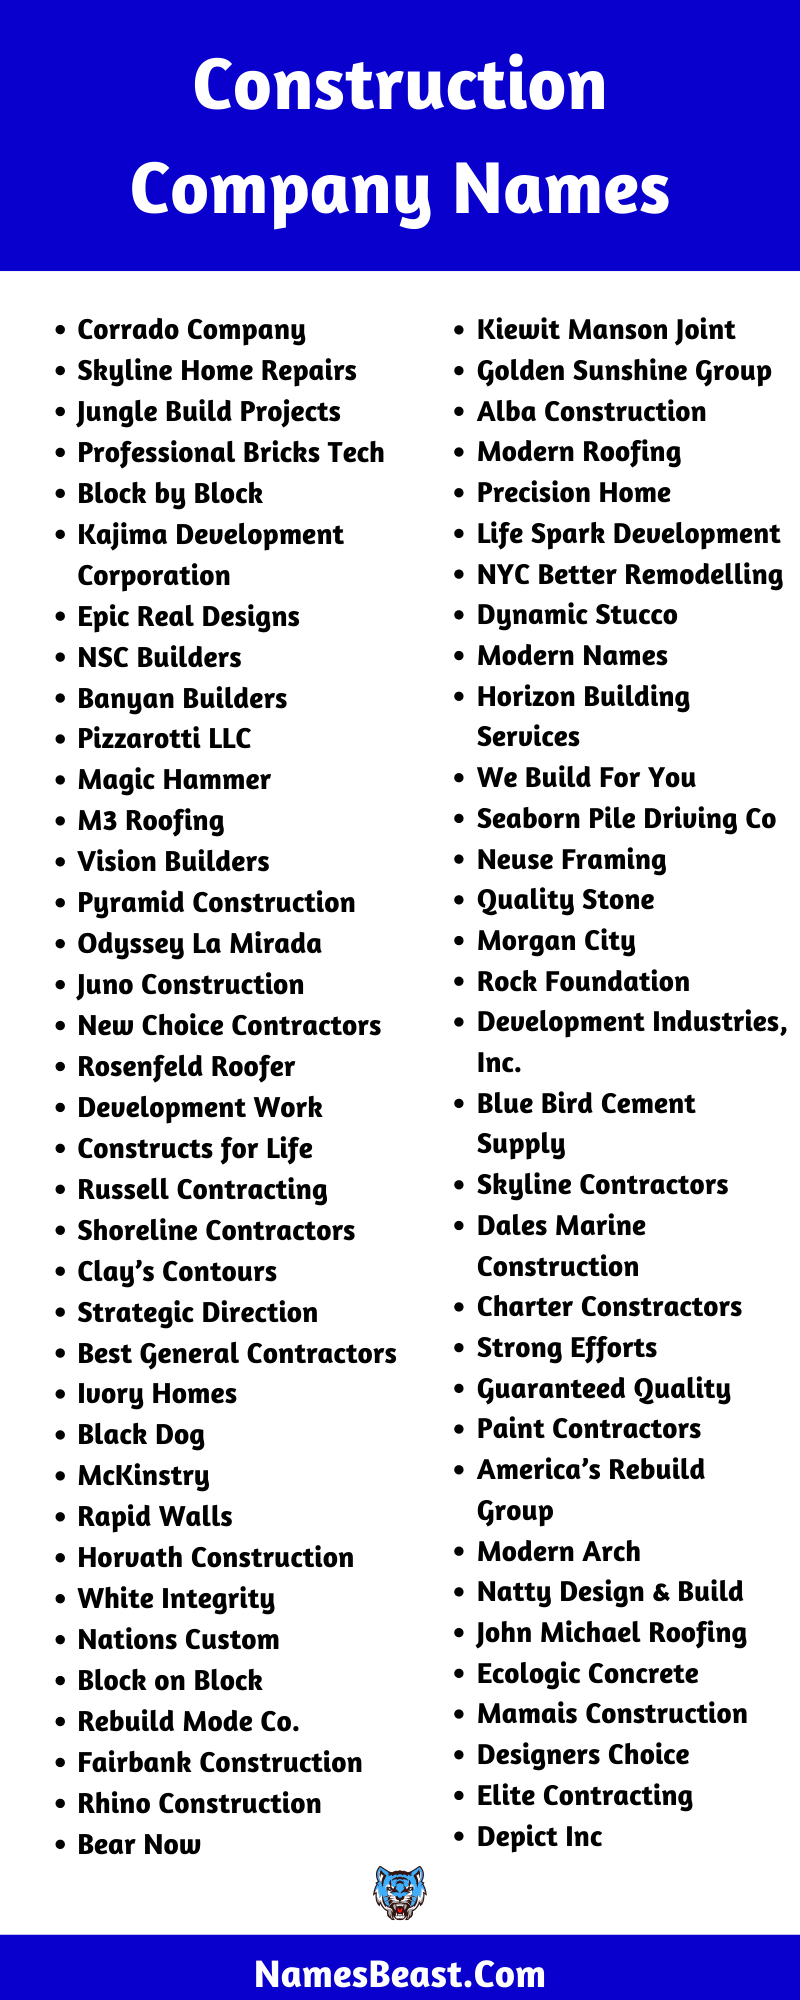 Construction Company Name Ideas